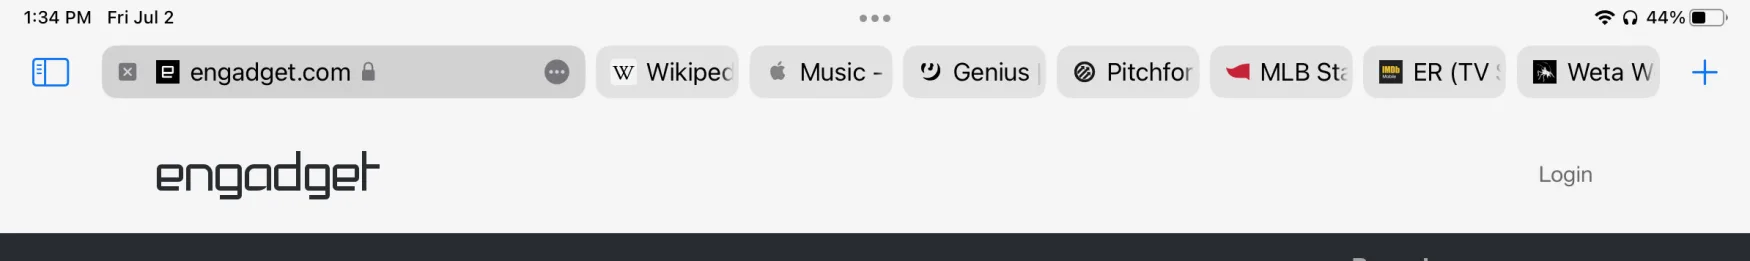 iPadOS 15 Safari menu bar